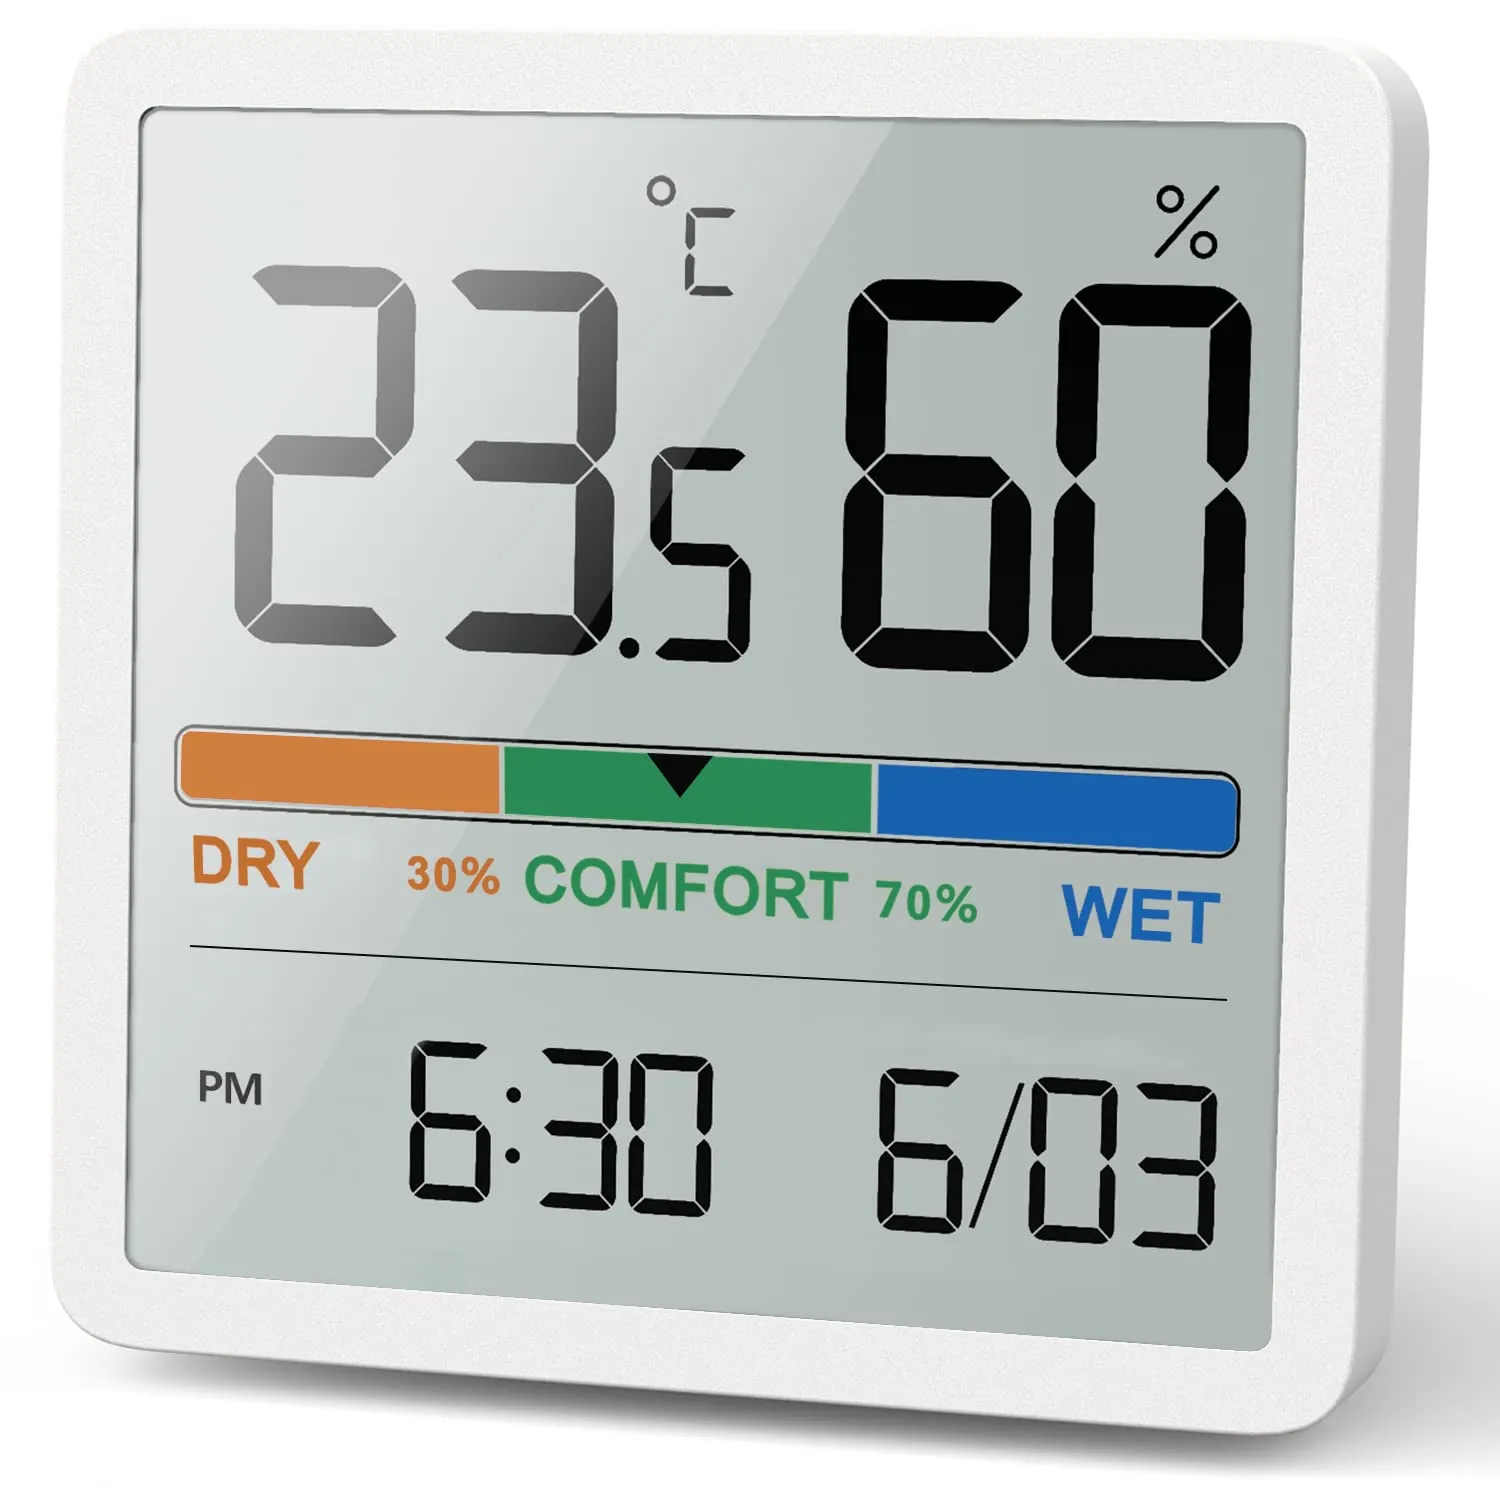   NOKLEAD 디지털 가정용 실내 온도 습도계, LCD 디지털 온도계, 습도계 센서 게이지, 기상 관측소, 신제품 